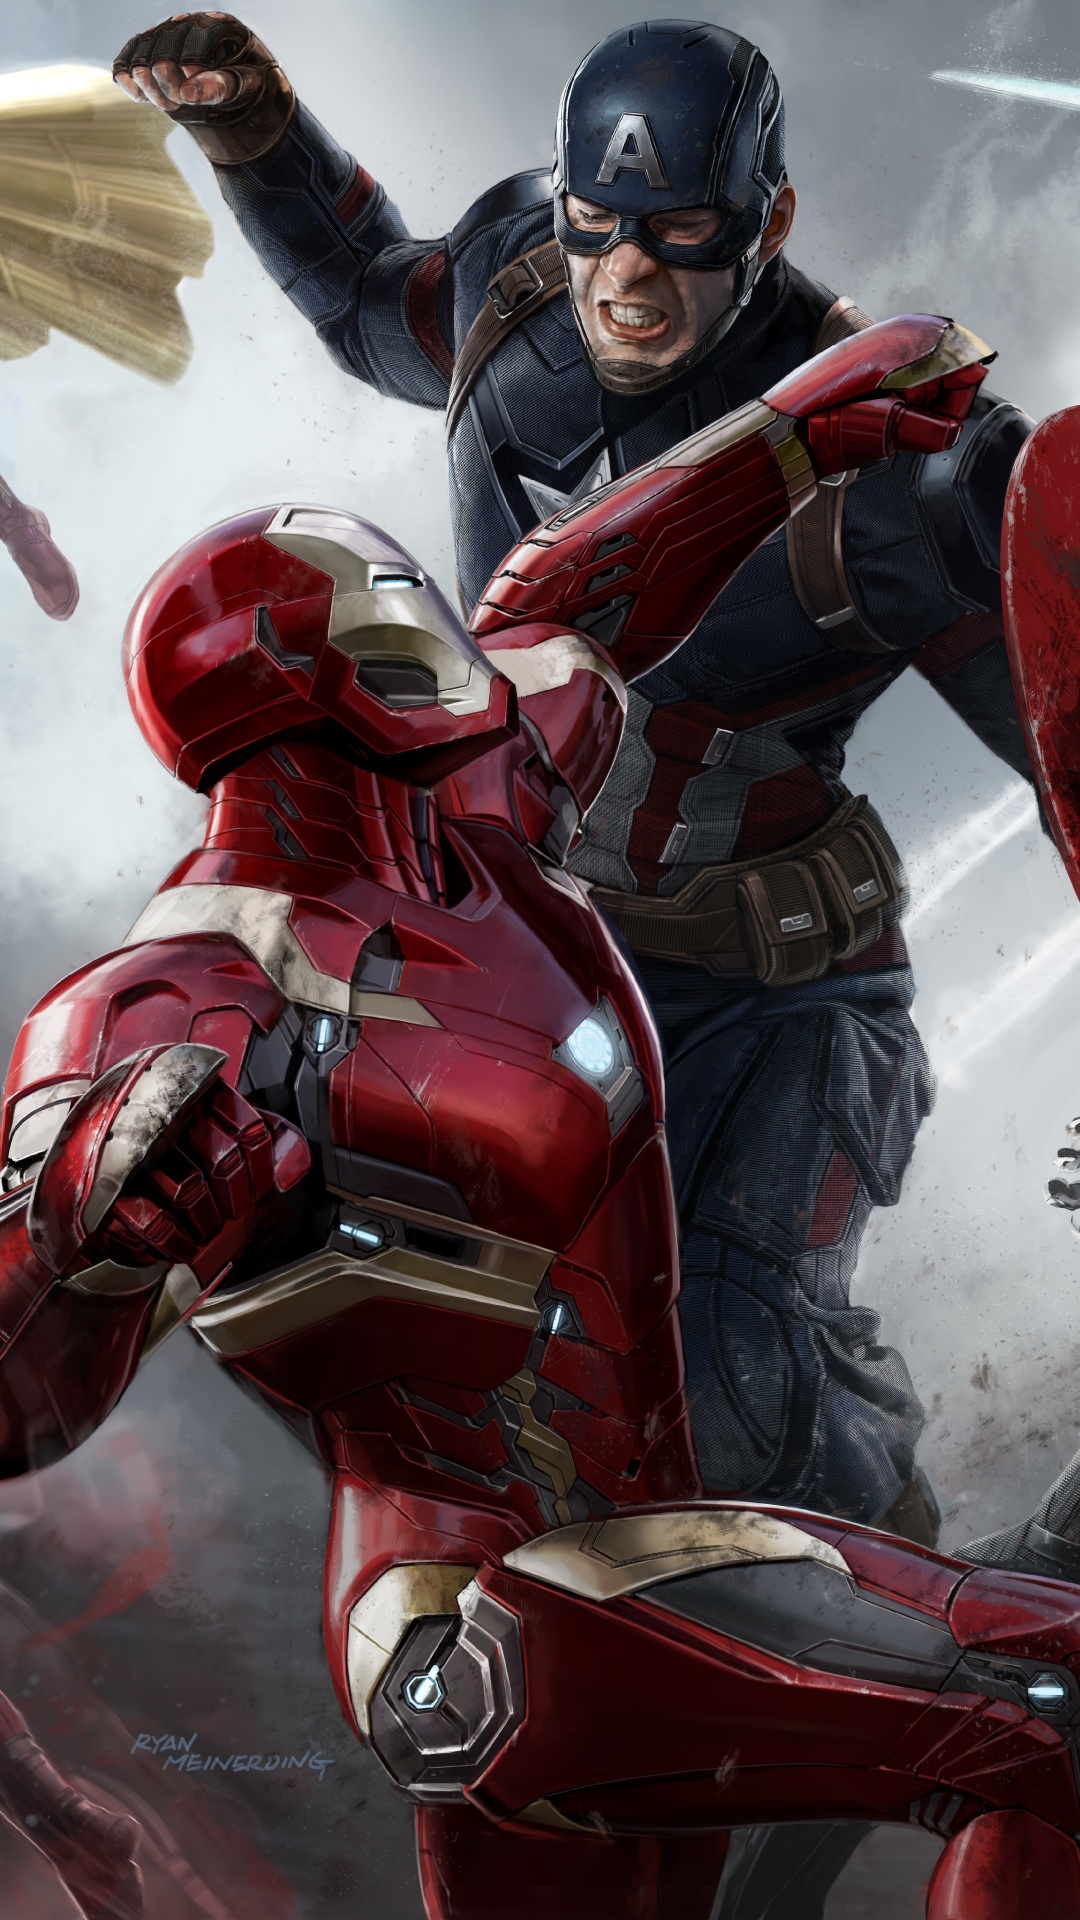 El Capitán América De La Guerra Civil, Capitán América, Superhéroe, Juego de Pc, Marvel Studios. Wallpaper in 1080x1920 Resolution